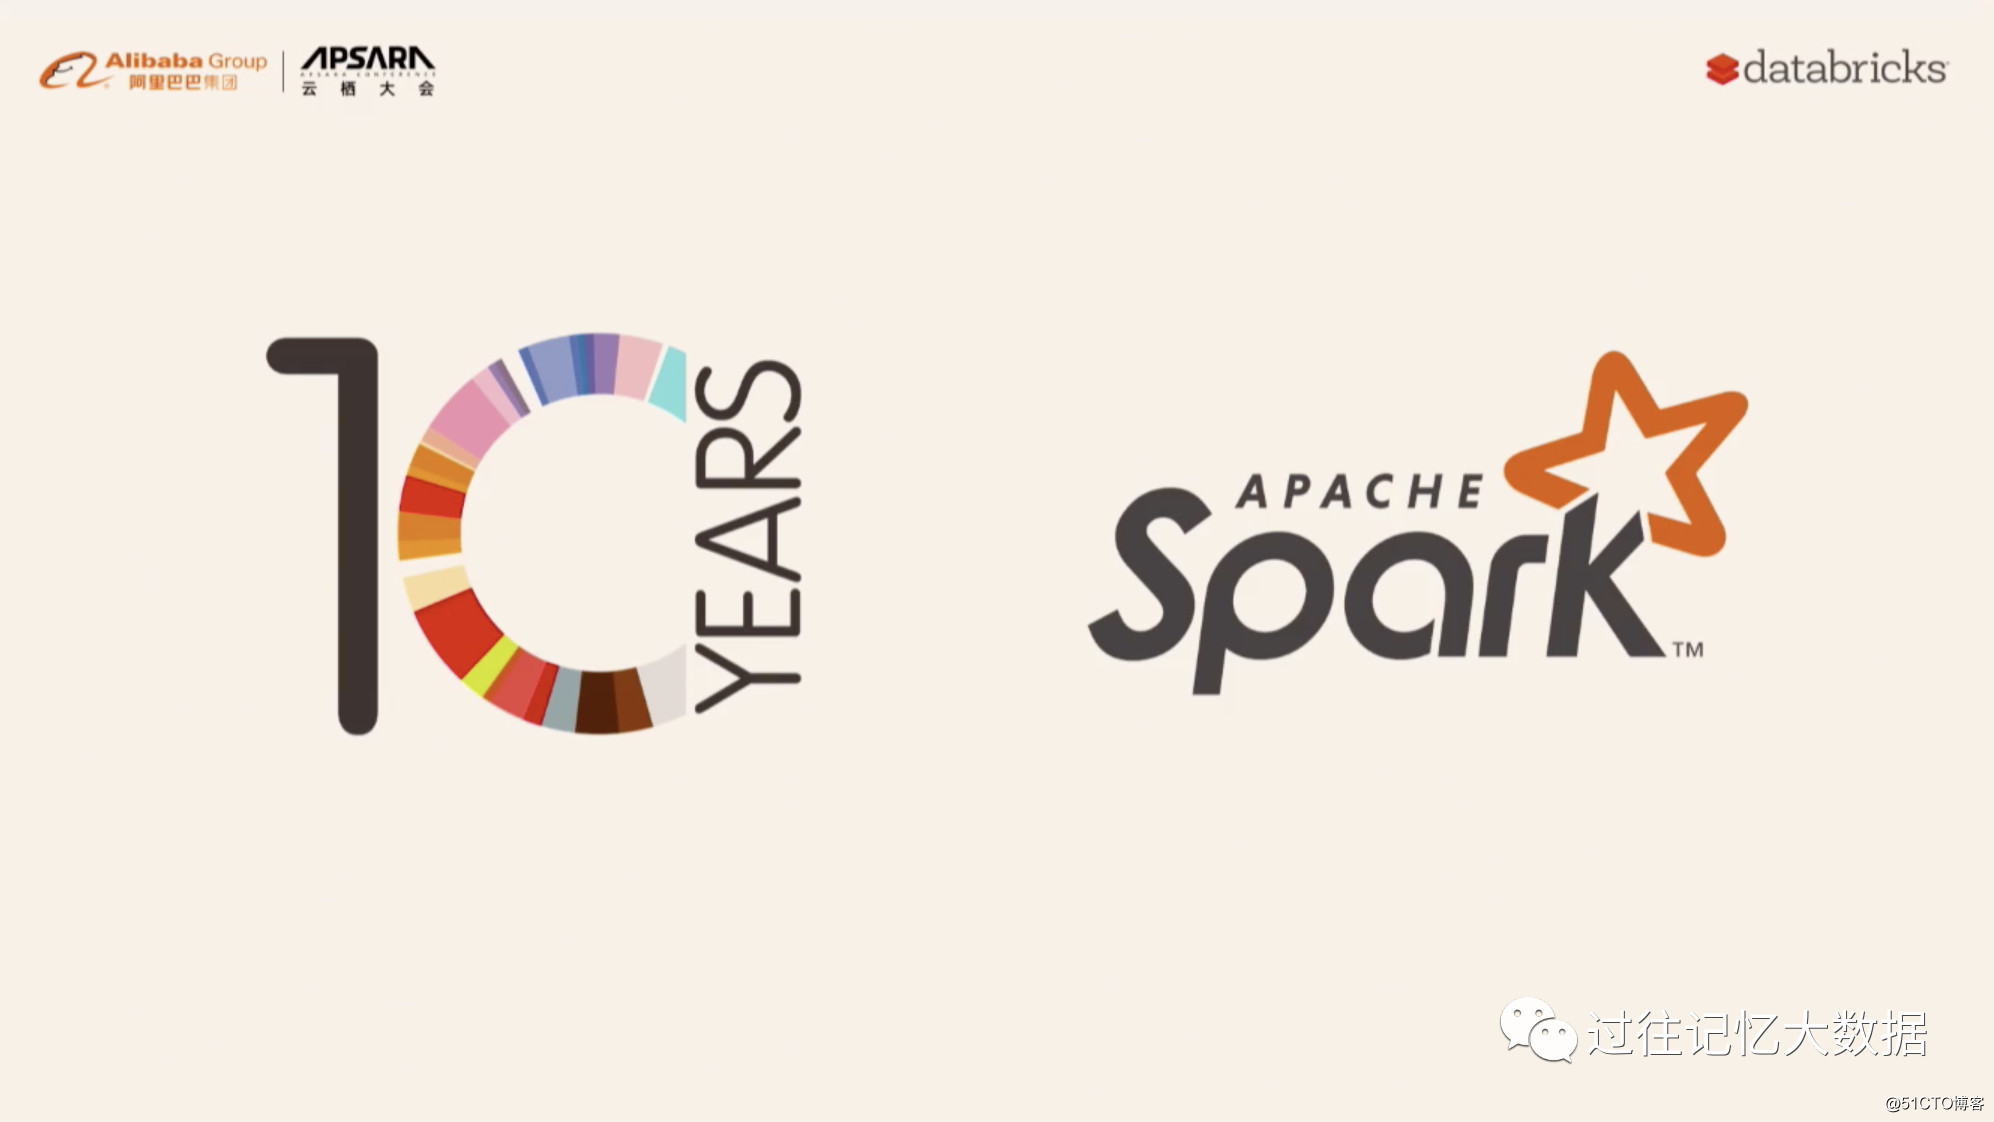 云栖大会 | Apache Spark 3.0 和 Koalas 最新进展